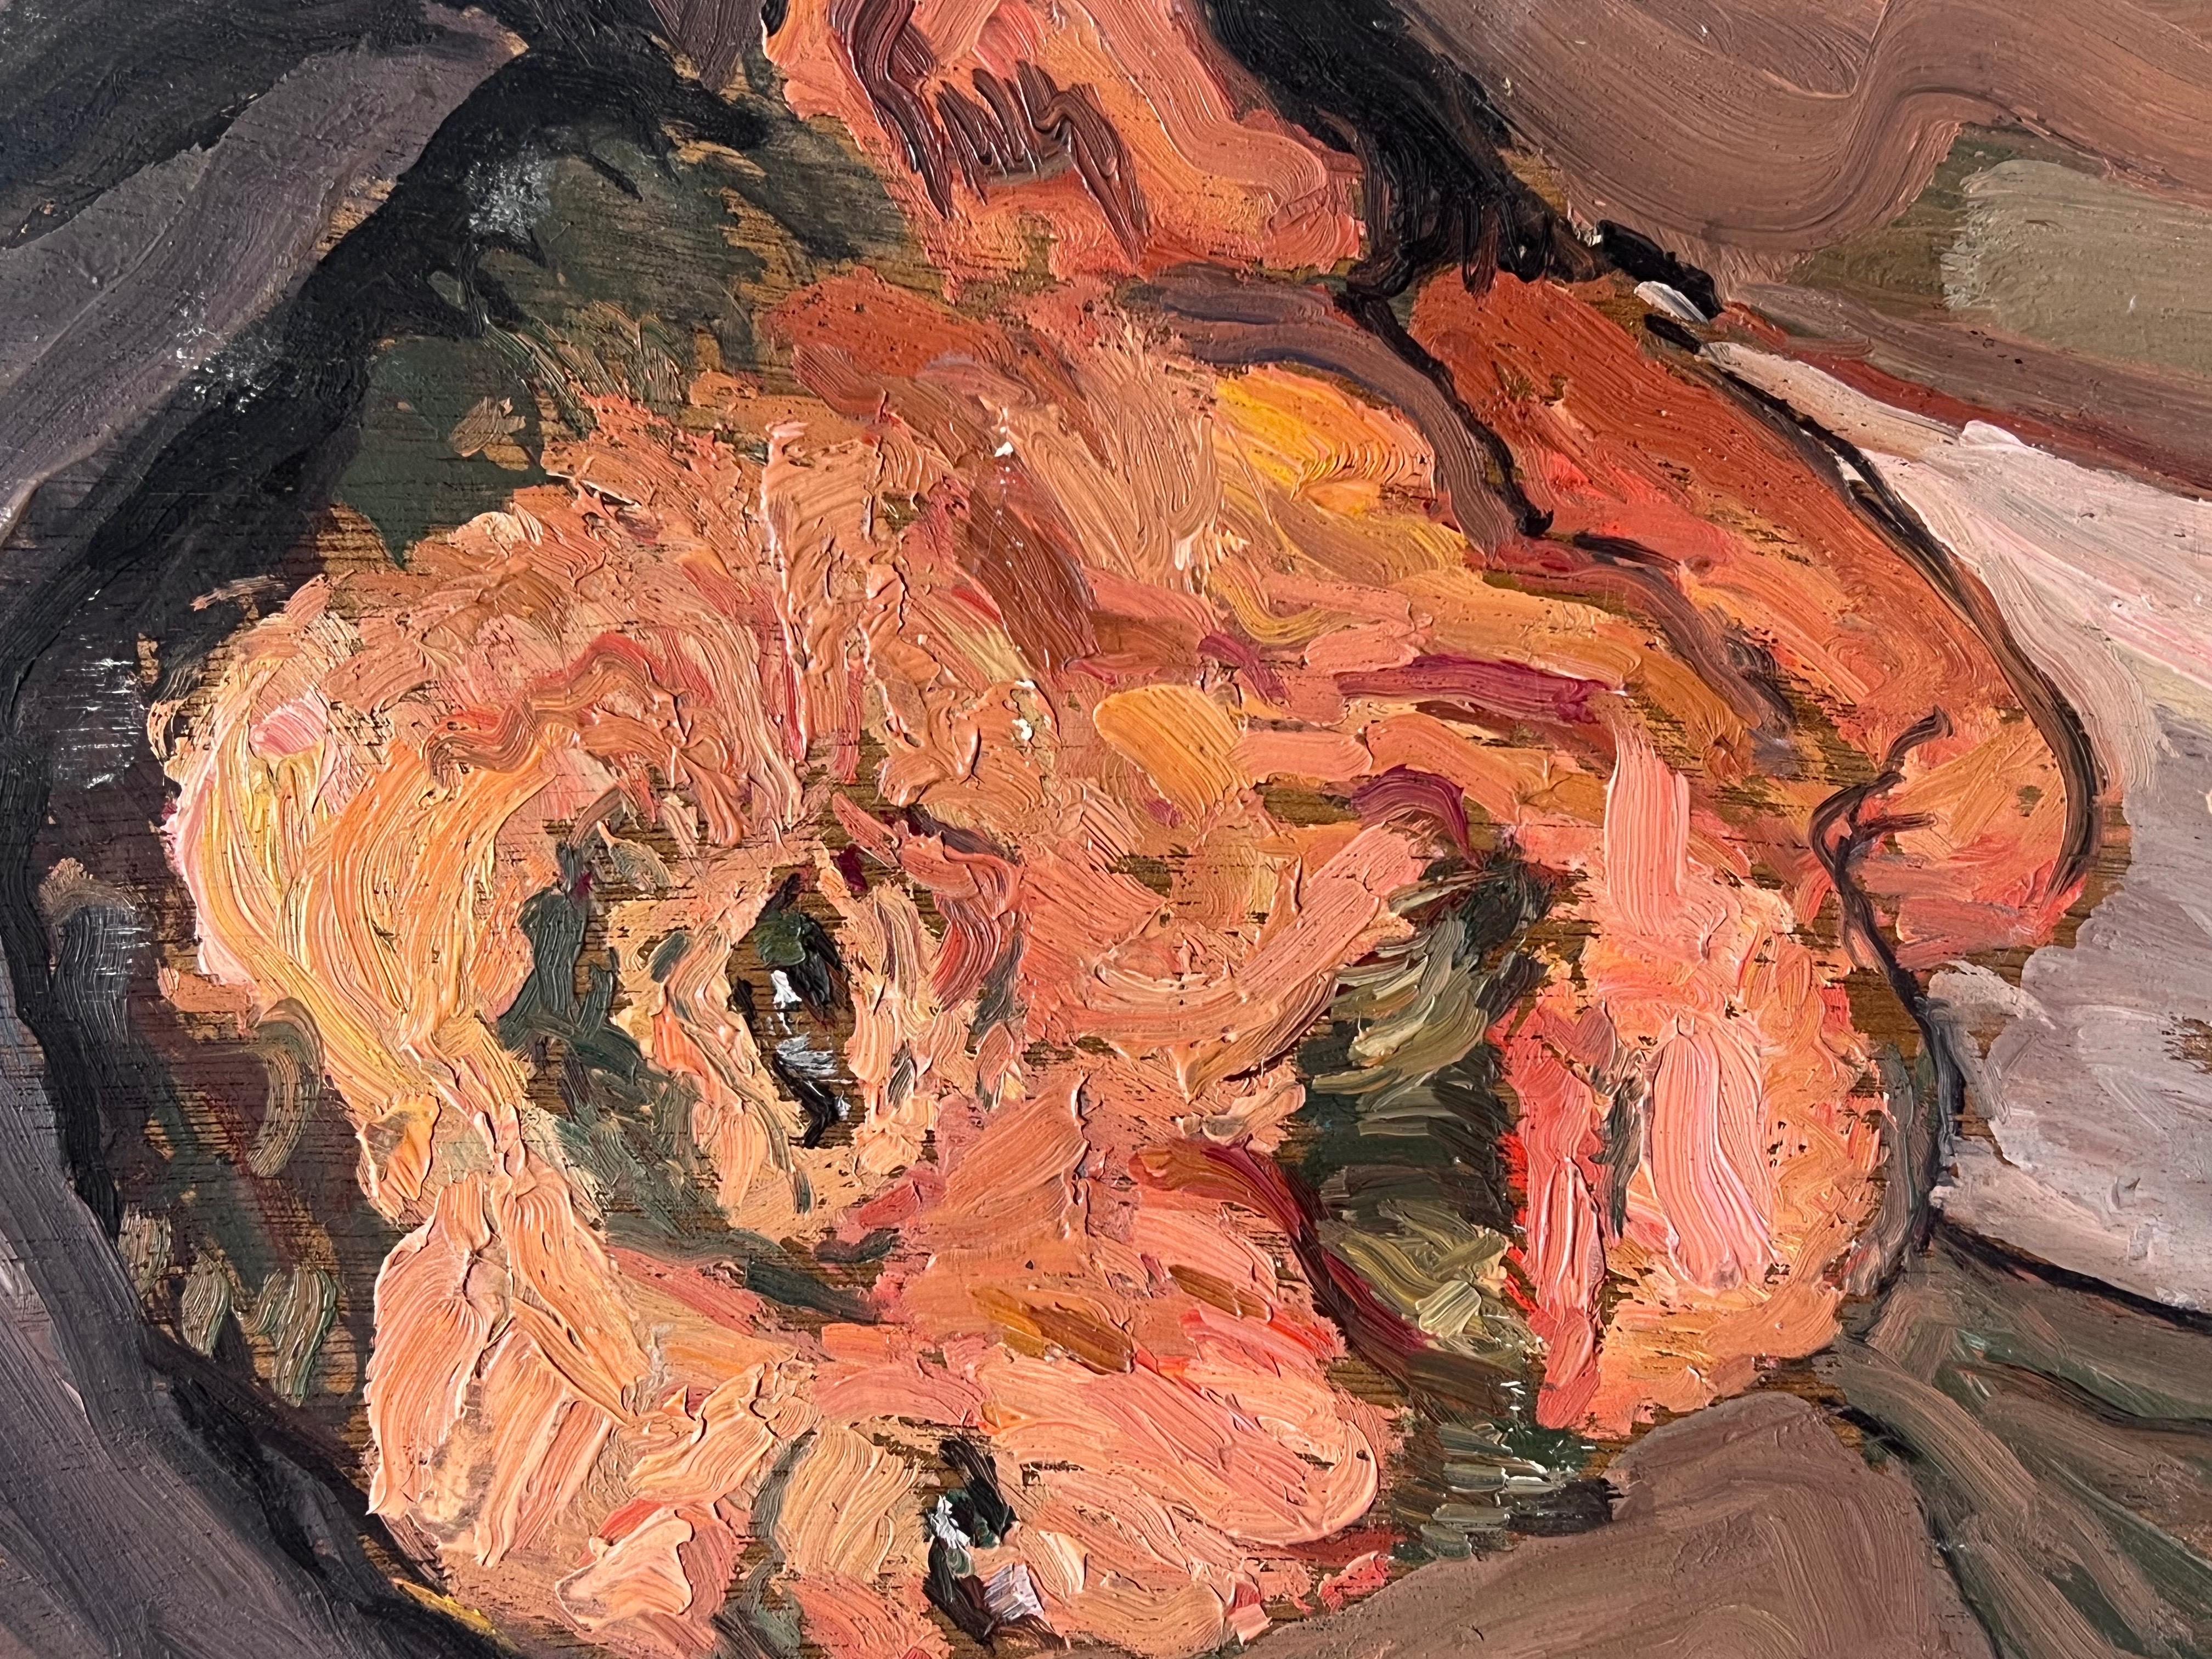 Künstler/Schule: Suzanne Dinkés (Französisch, 1895 - 1984) signiert

Titel: Porträt eines Mannes mit Schnurrbart

Medium: Öl auf Karton, ungerahmt

Größe: 10 x 7 Zoll

Provenienz: Privatsammlung, Frankreich

Zustand: Das Gemälde ist in insgesamt